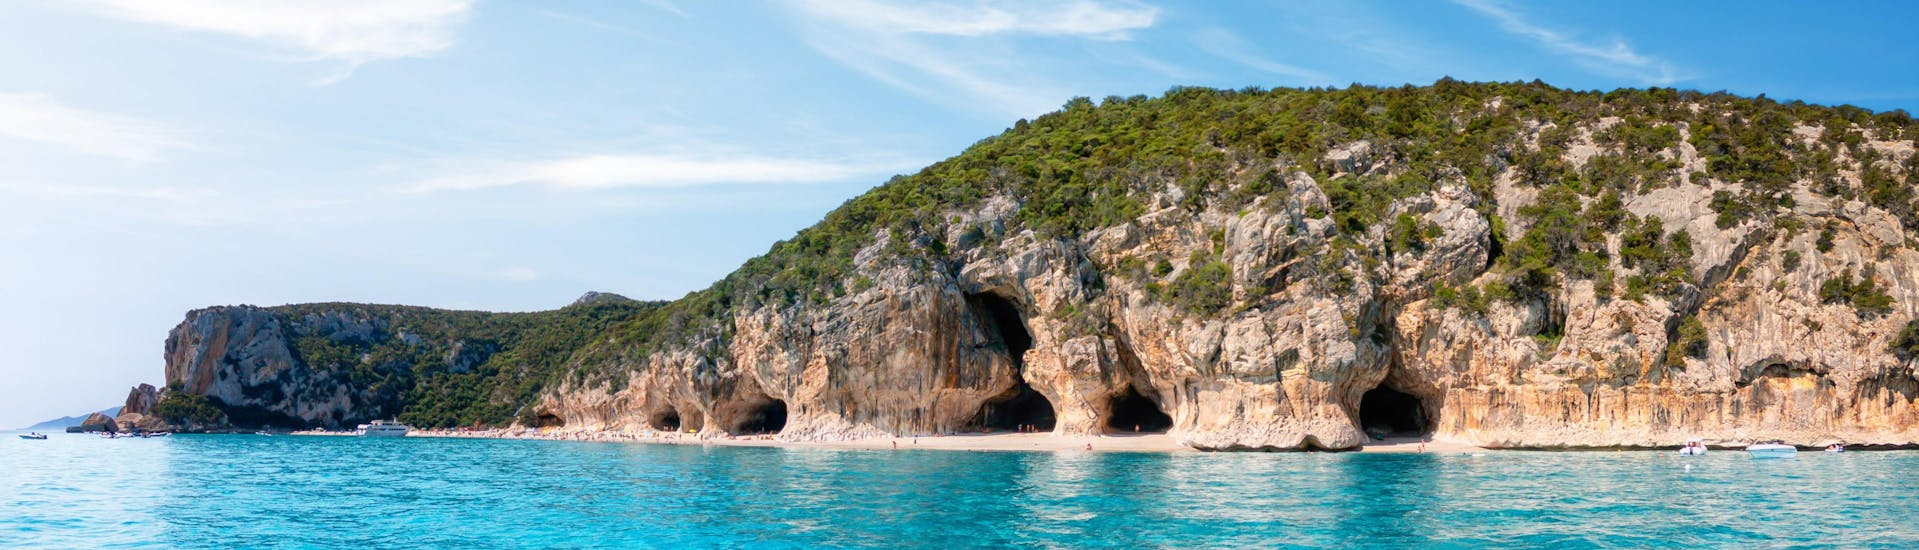 Photo des grottes situées le long de la côte de Cala Luna, en Sardaigne, une destination populaire pour les excursions en bateau.